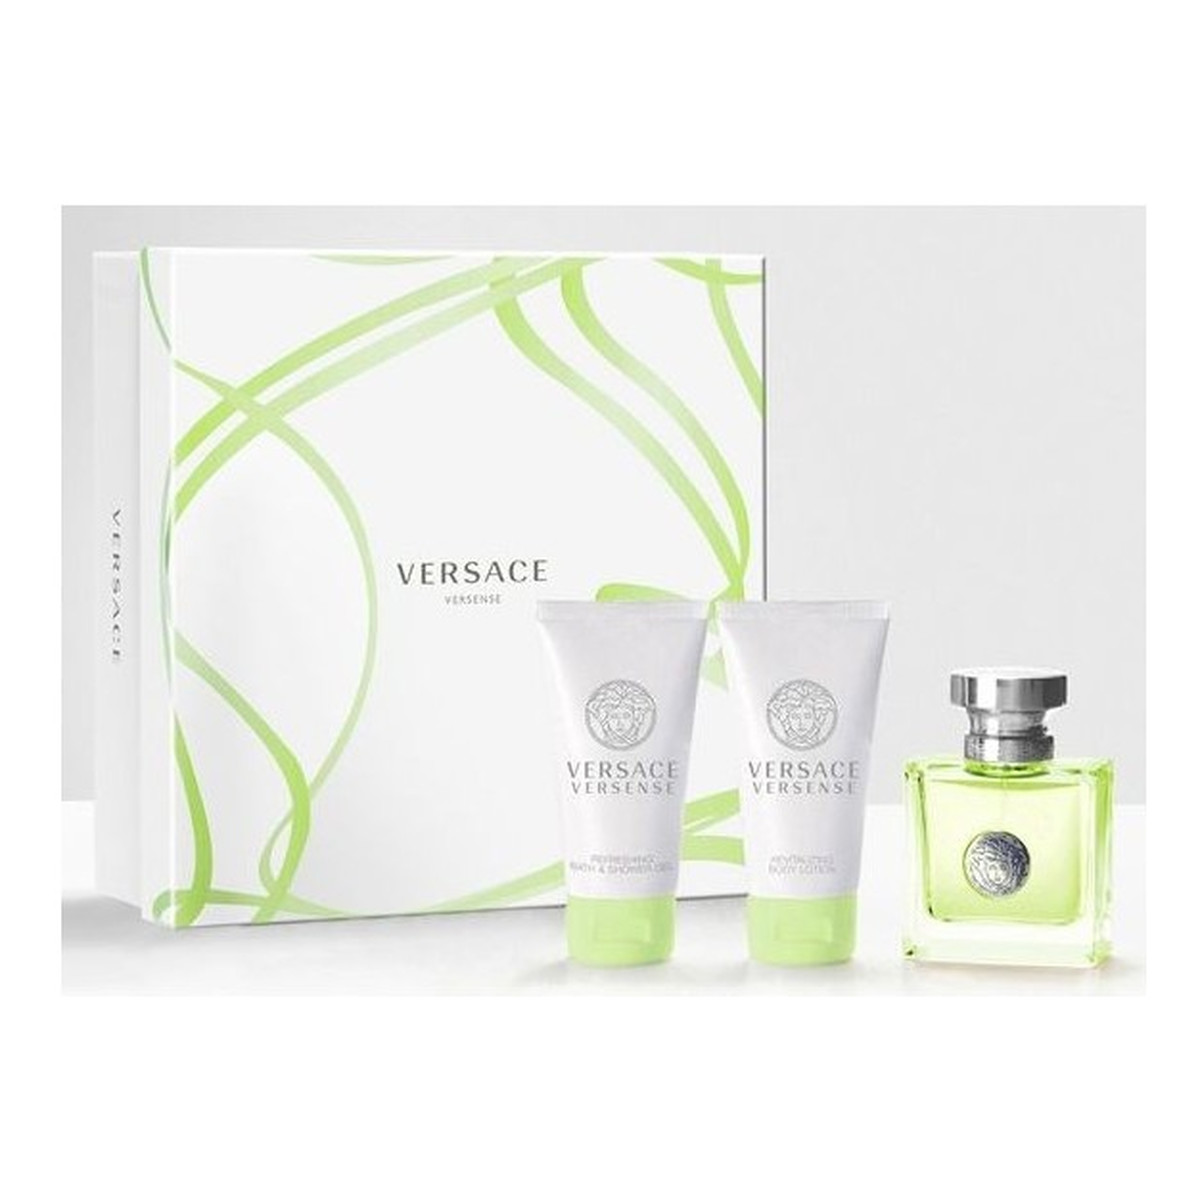 Versace Versense Woda toaletowa 50ml spray + Balsam do ciała 50ml + Żel pod prysznic